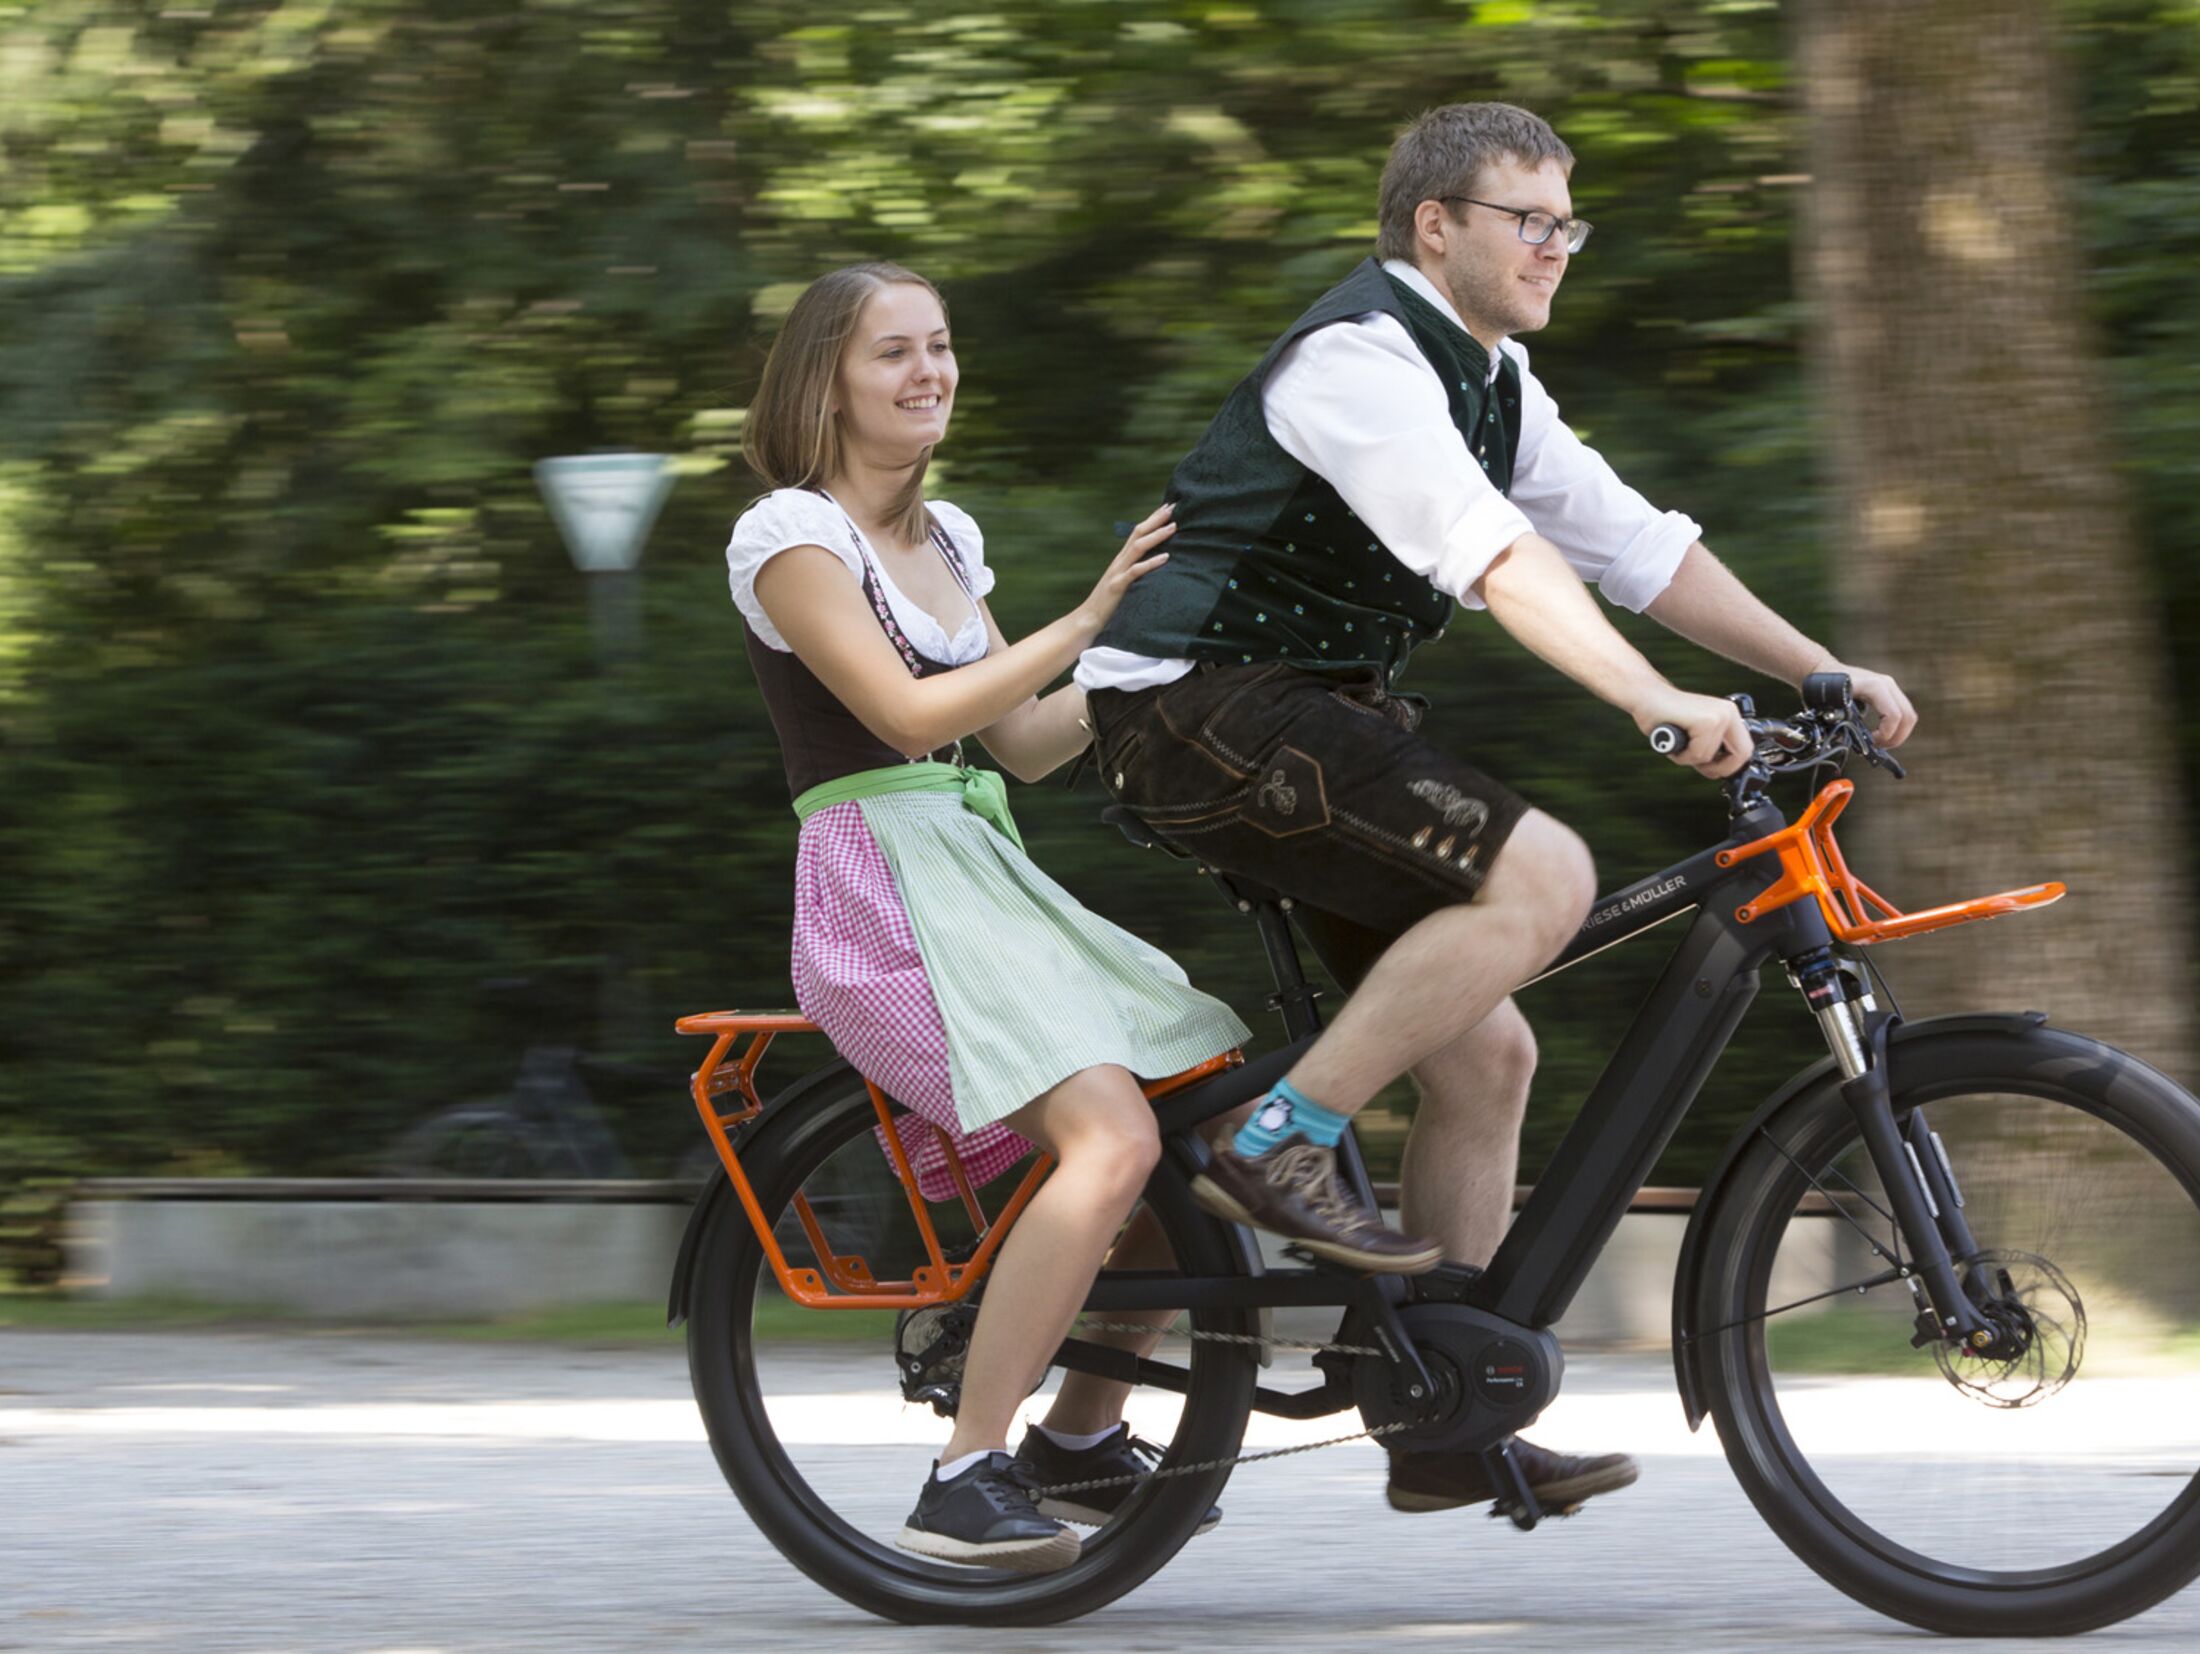 Menschen auf einem elektrischen Fahrrad mit farbenfroher